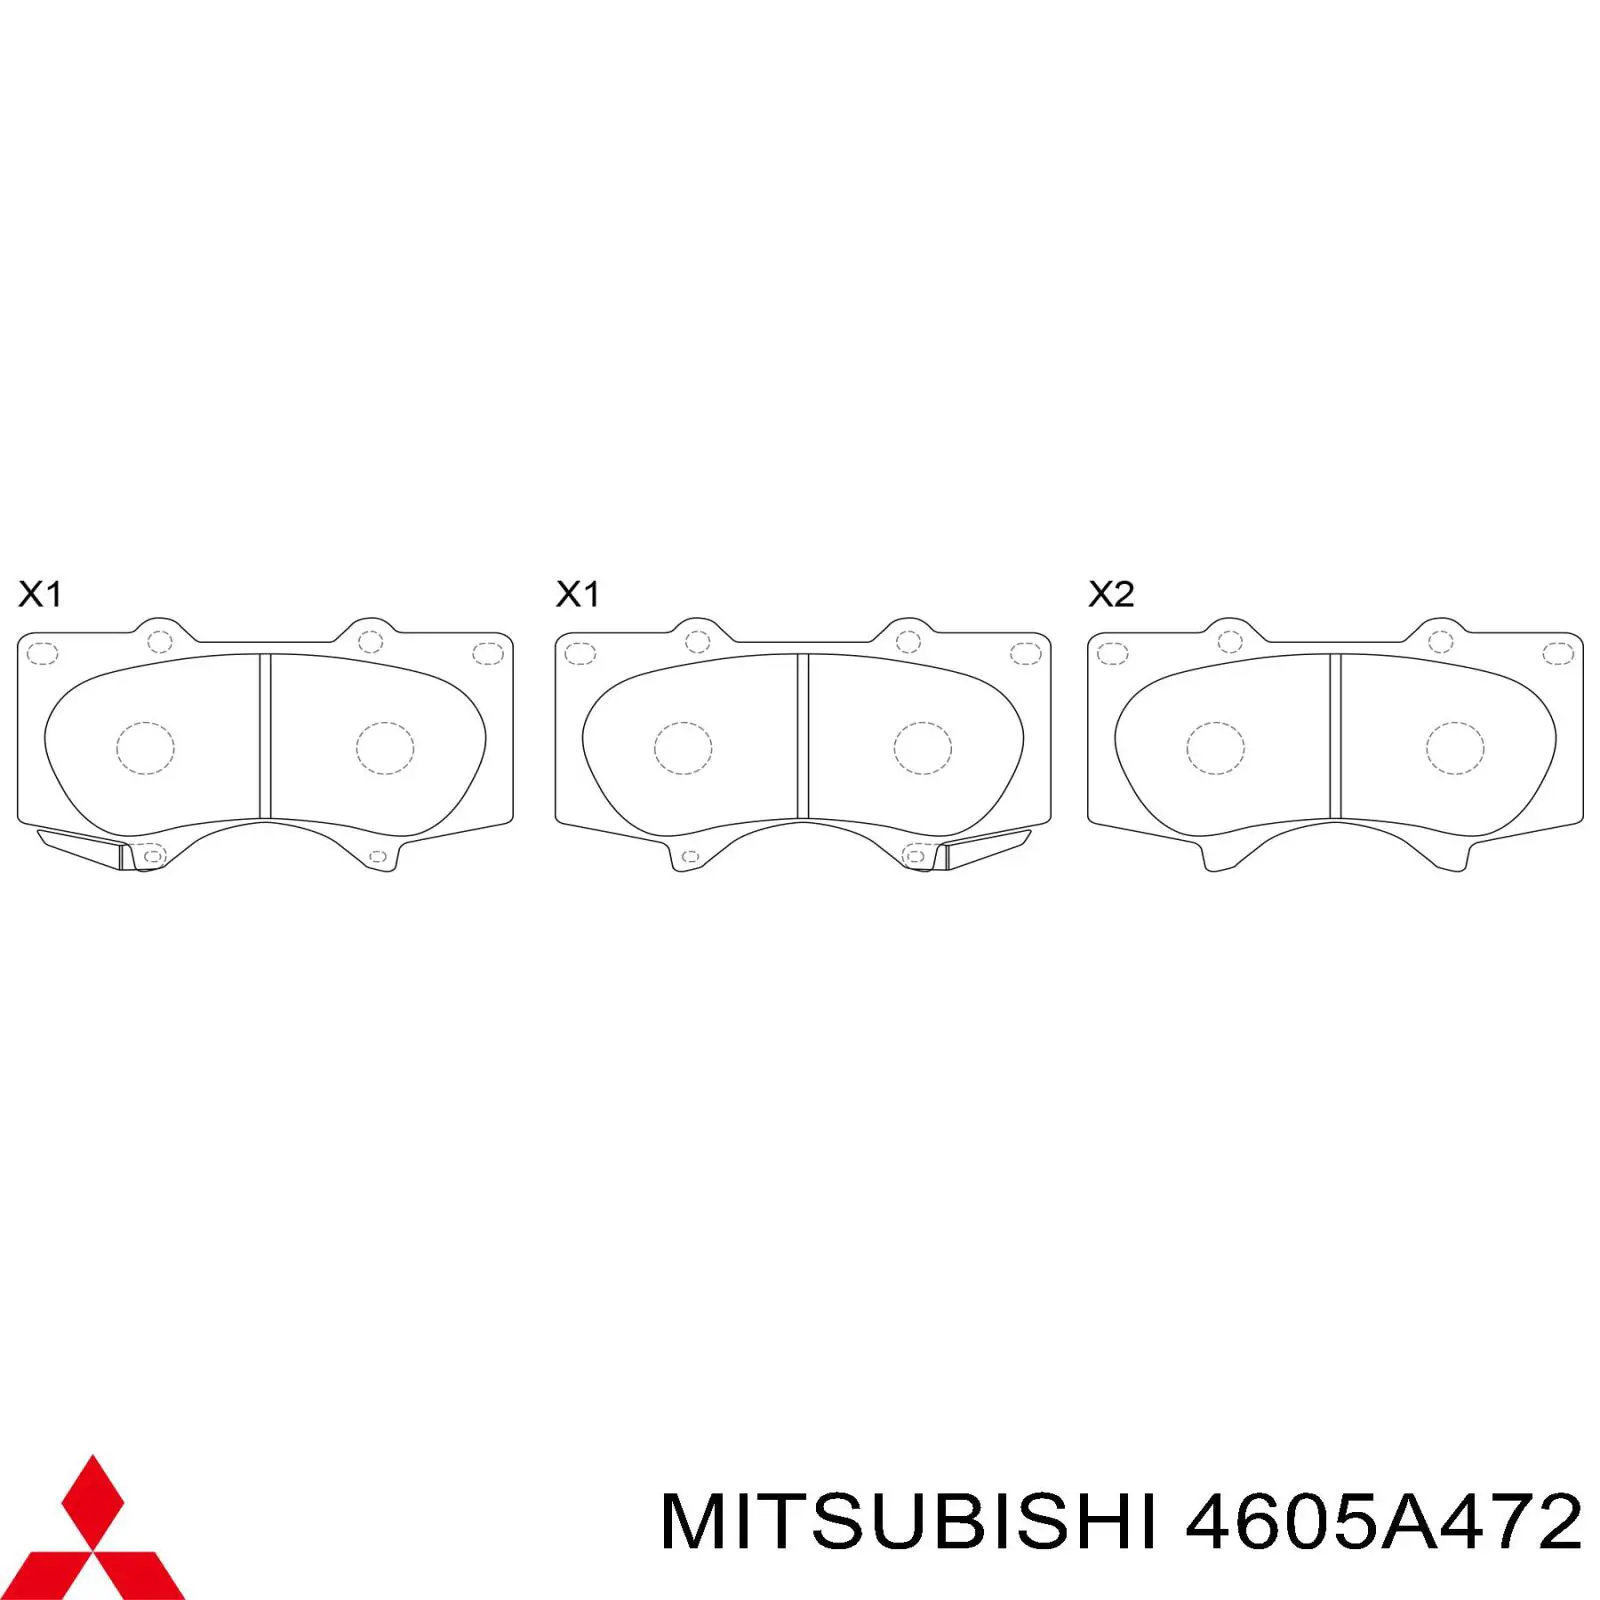 4605A472 Mitsubishi pastillas de freno delanteras